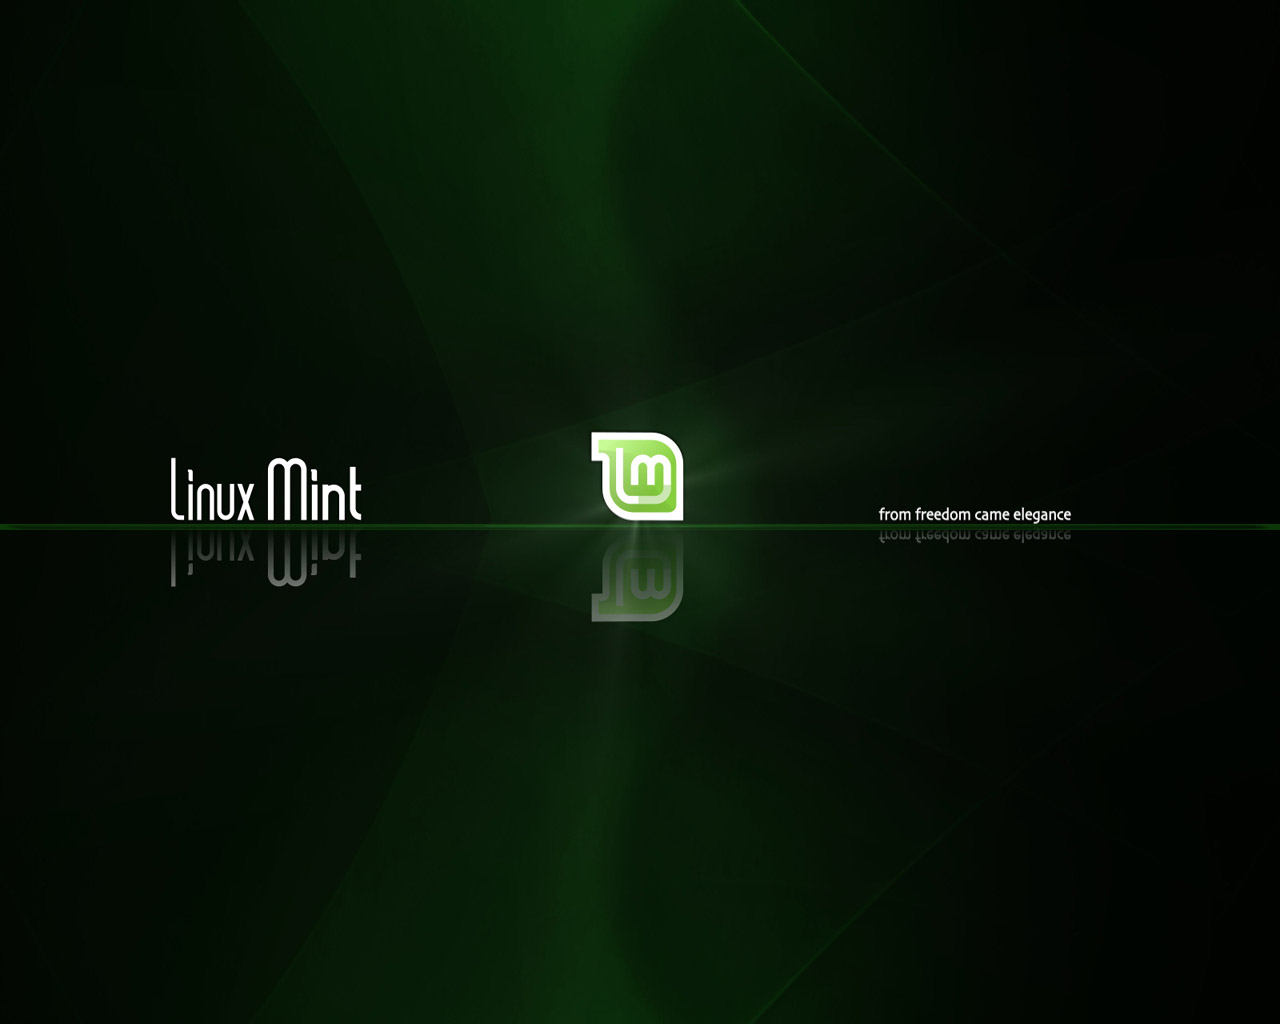 Linux Mint Wallpapers Linux Mint Myspace Backgrounds Linux Mint